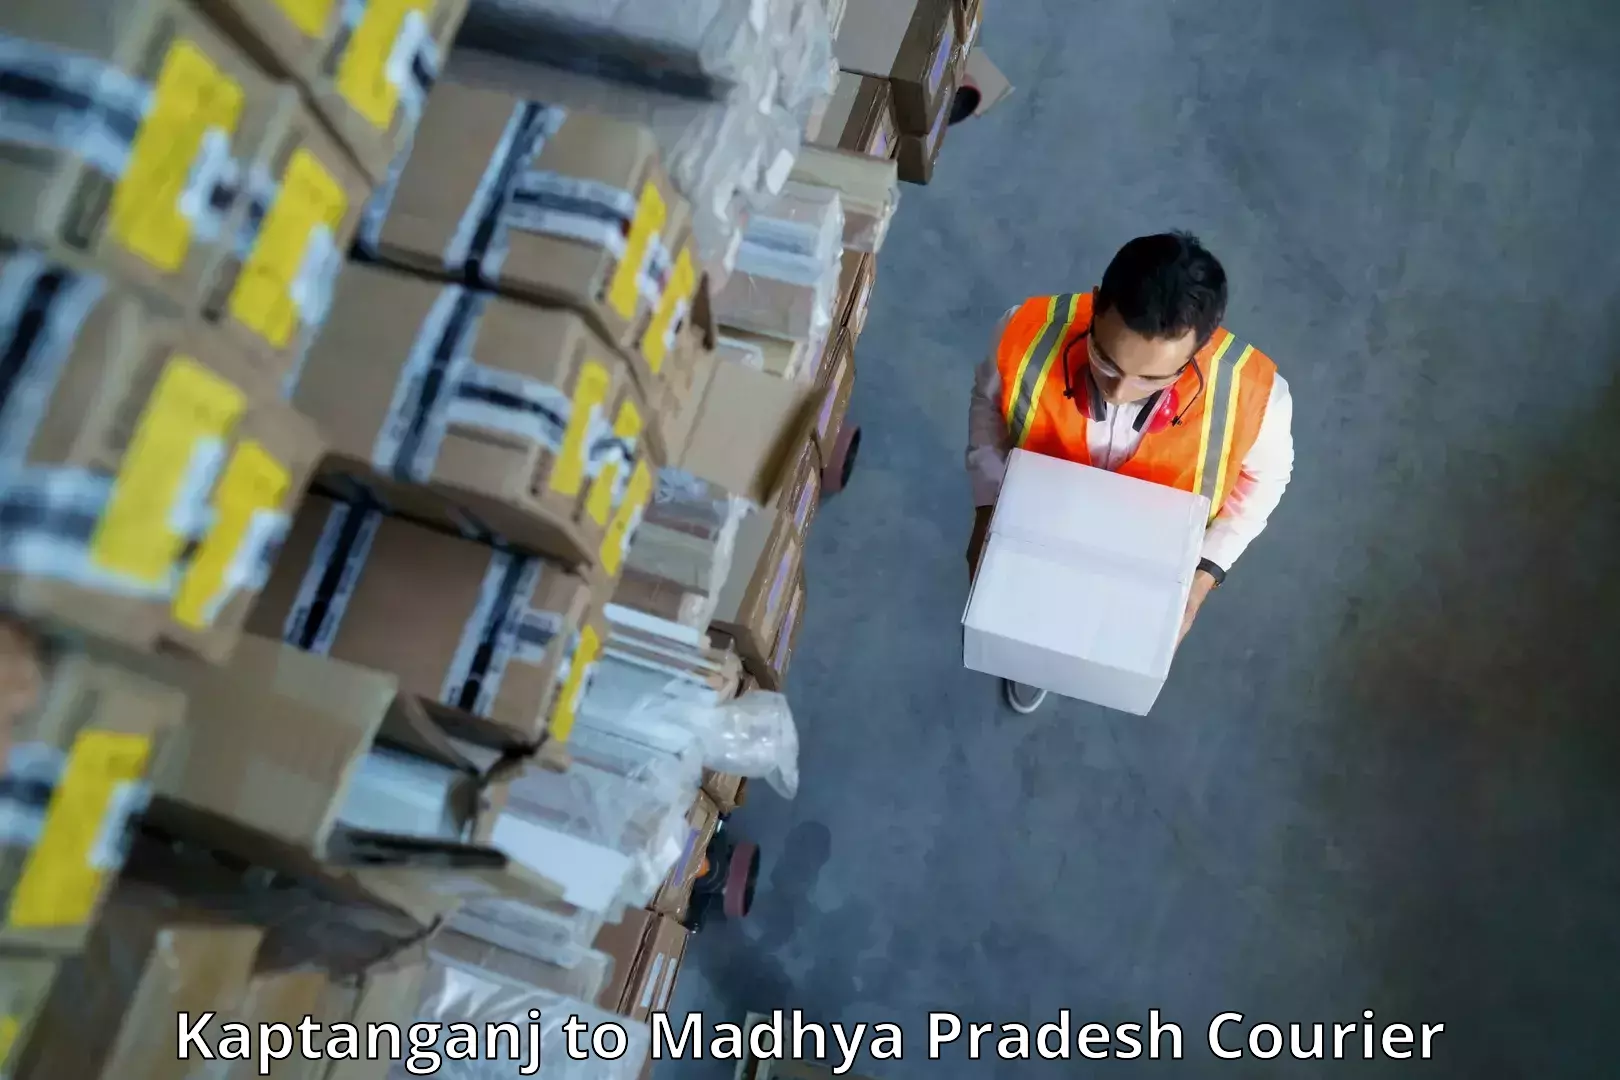 Custom courier packaging in Kaptanganj to IIIT Bhopal